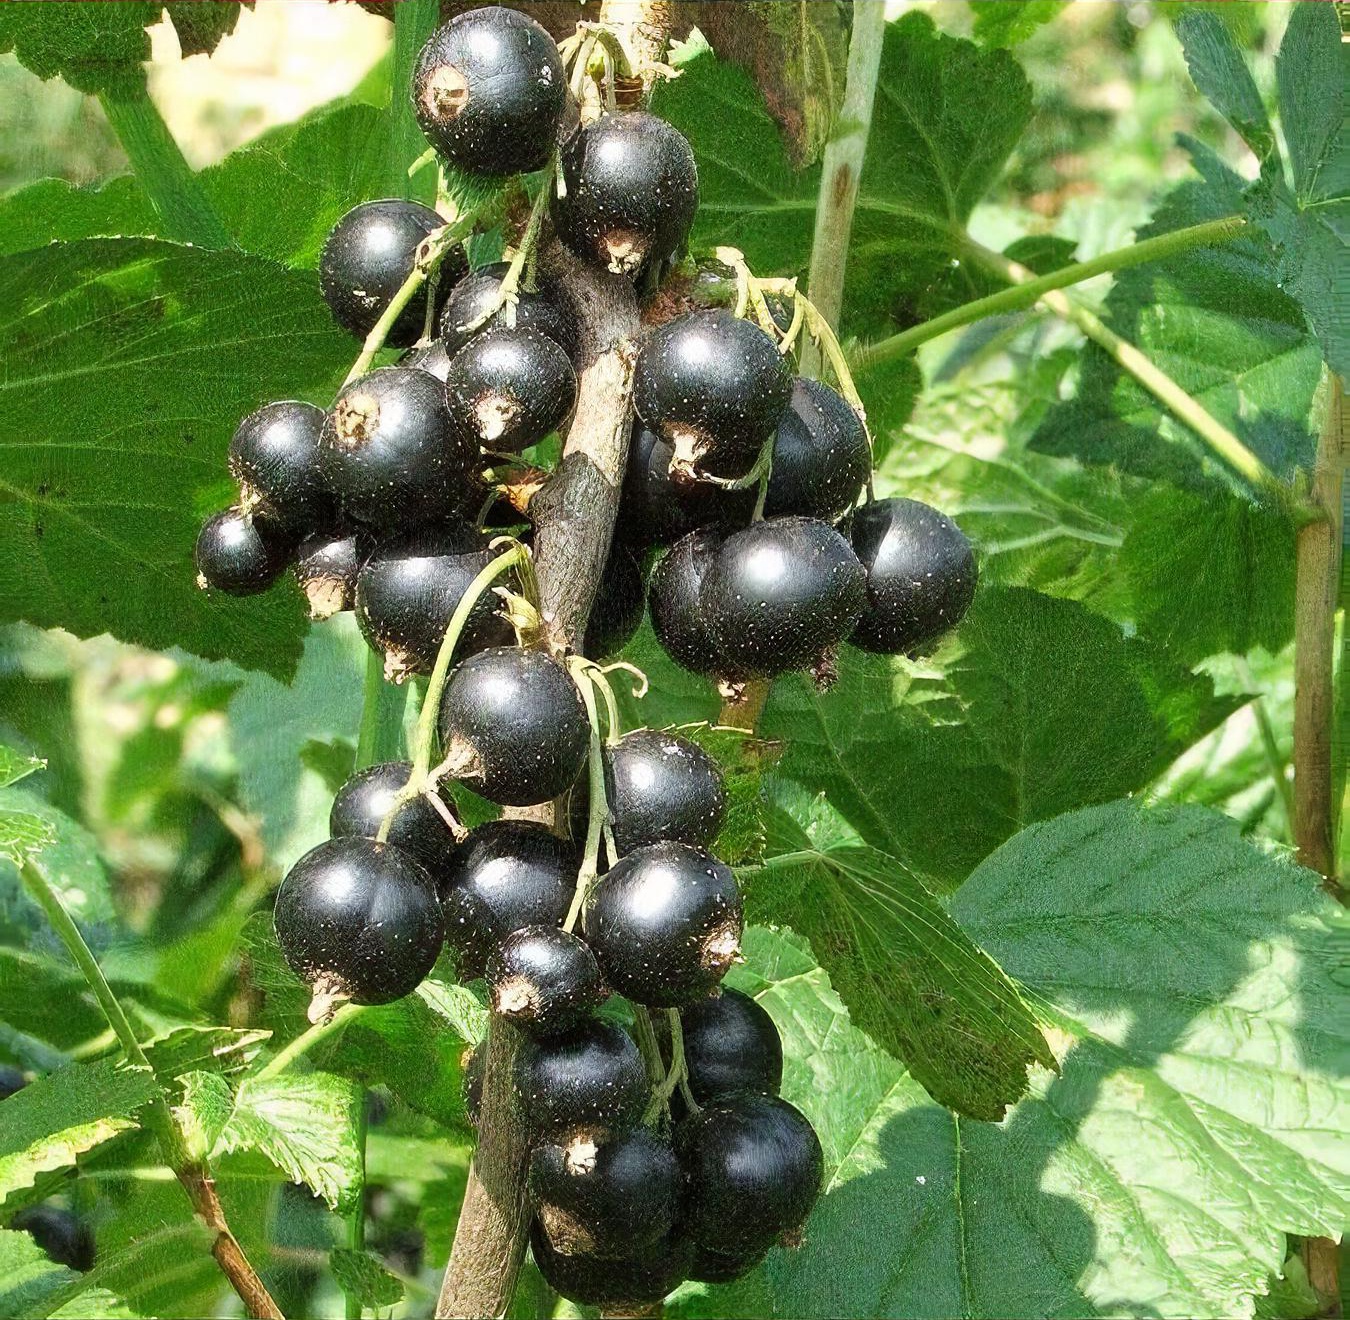 Ribes nigrum